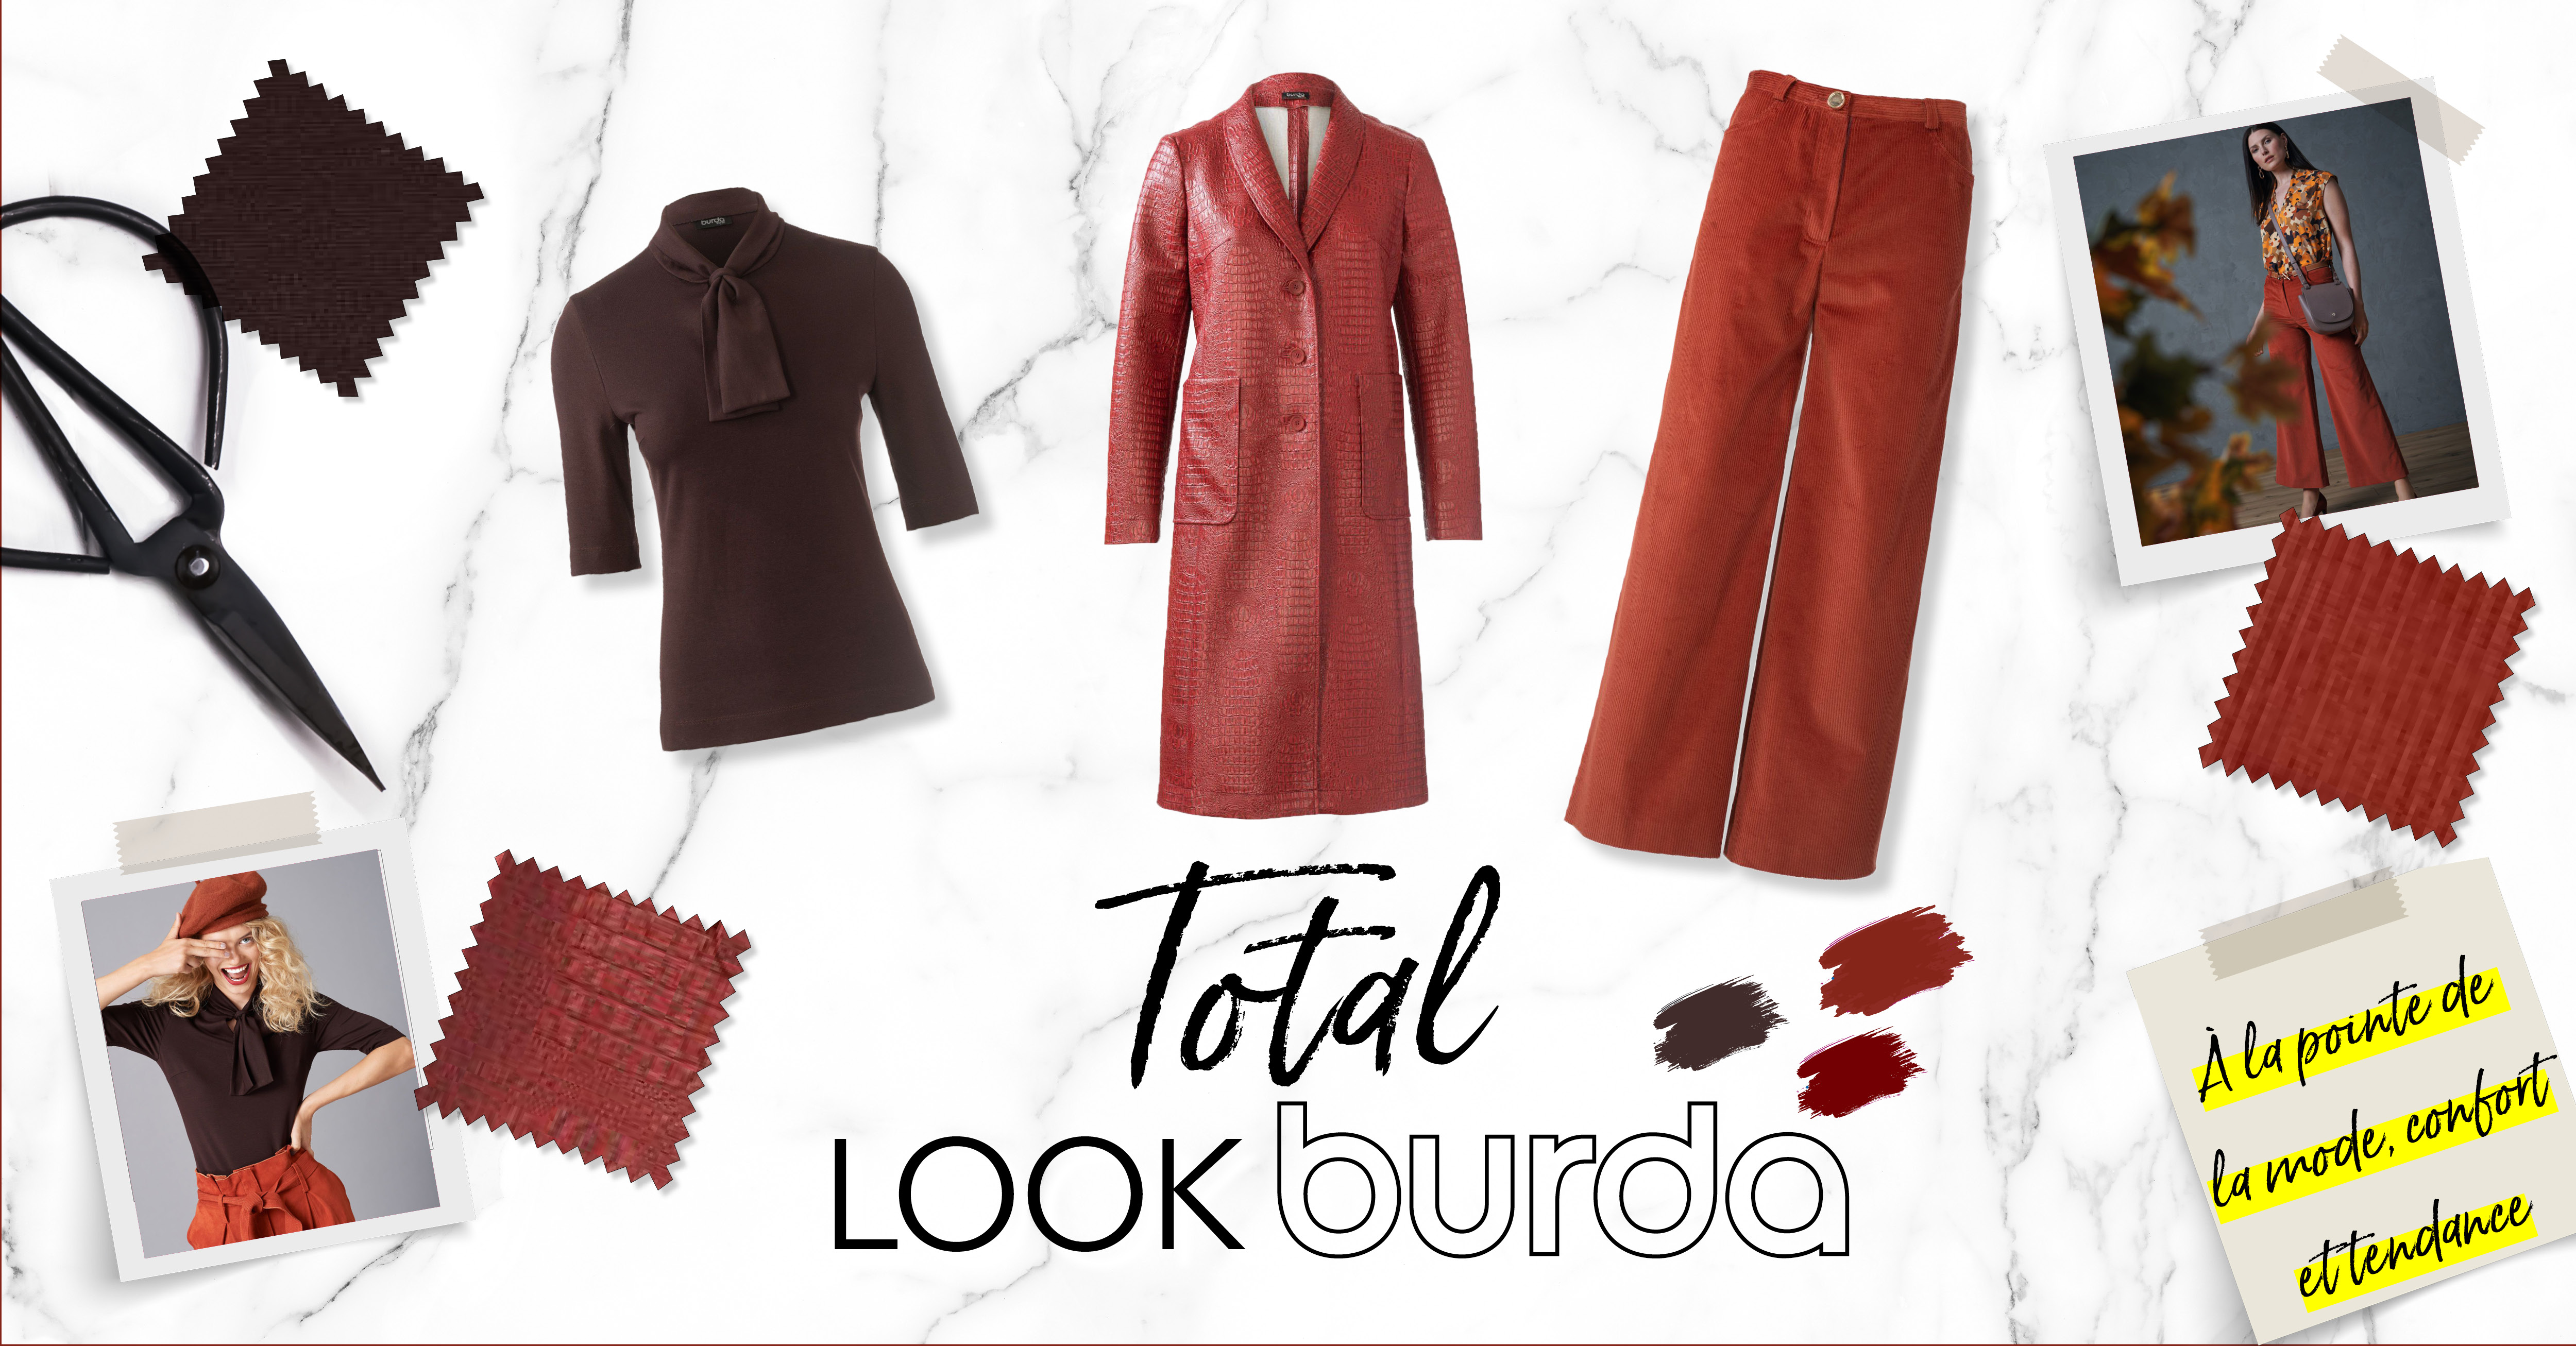 Le look burda Style : tendance en toute simplicité pour l'automne